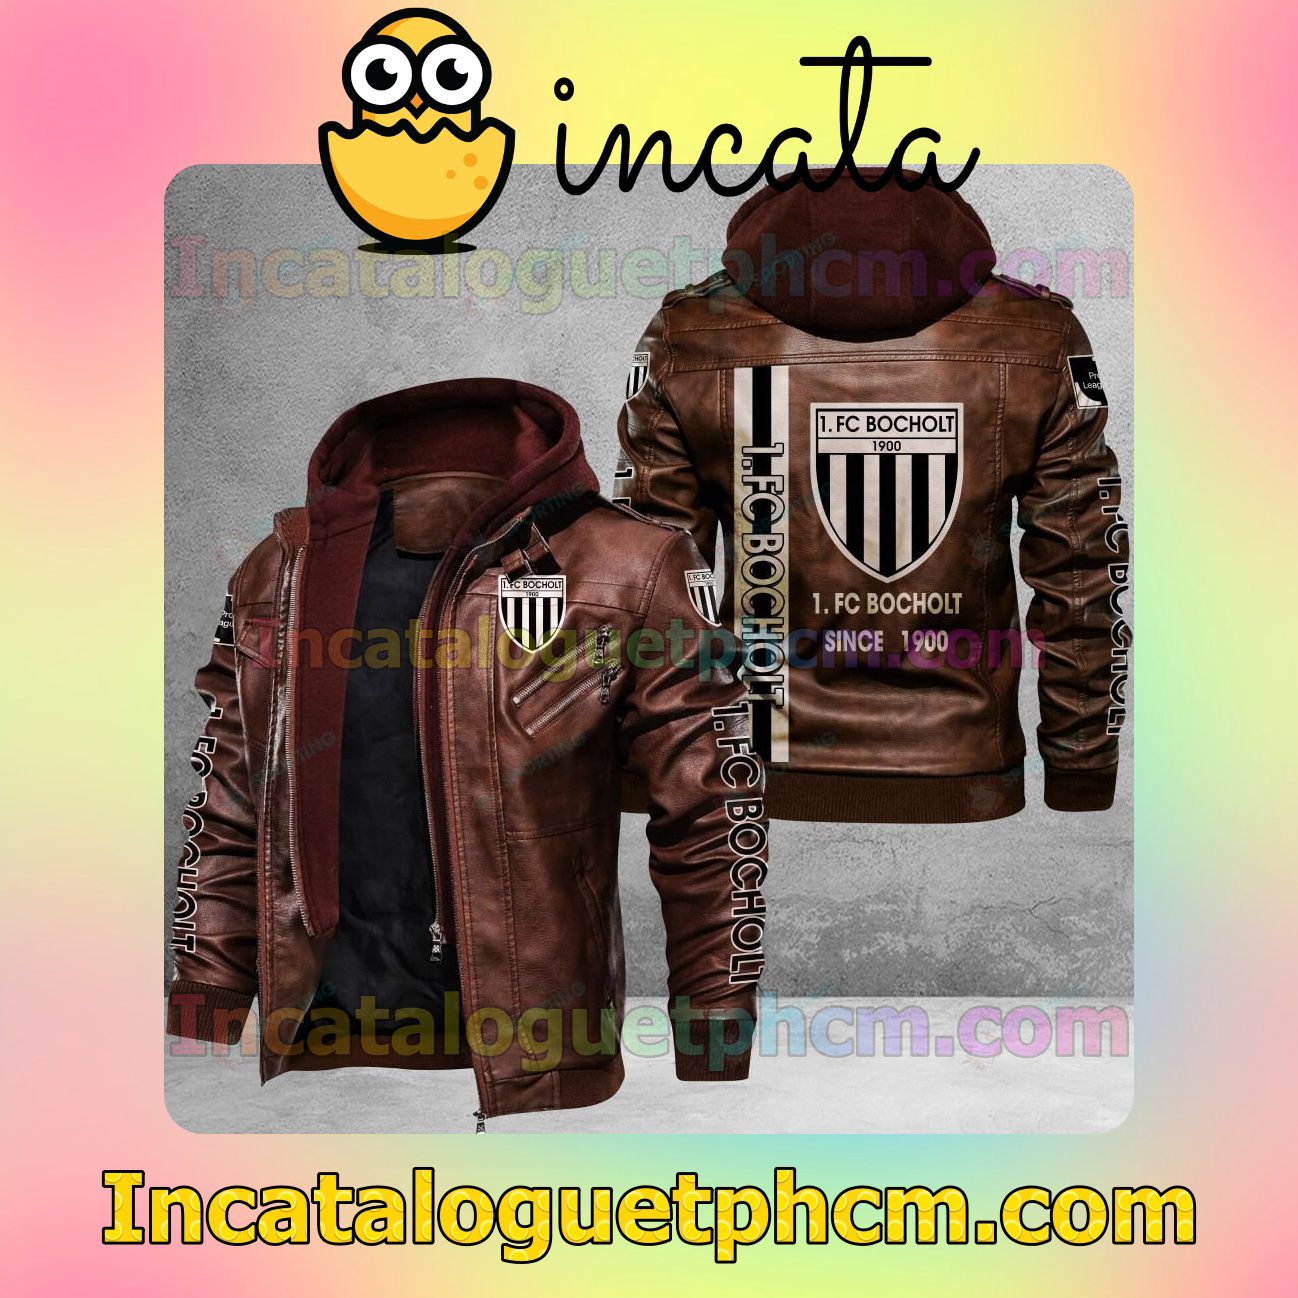 Check out 1. FC Bocholt Brand Uniform Leather Jacket